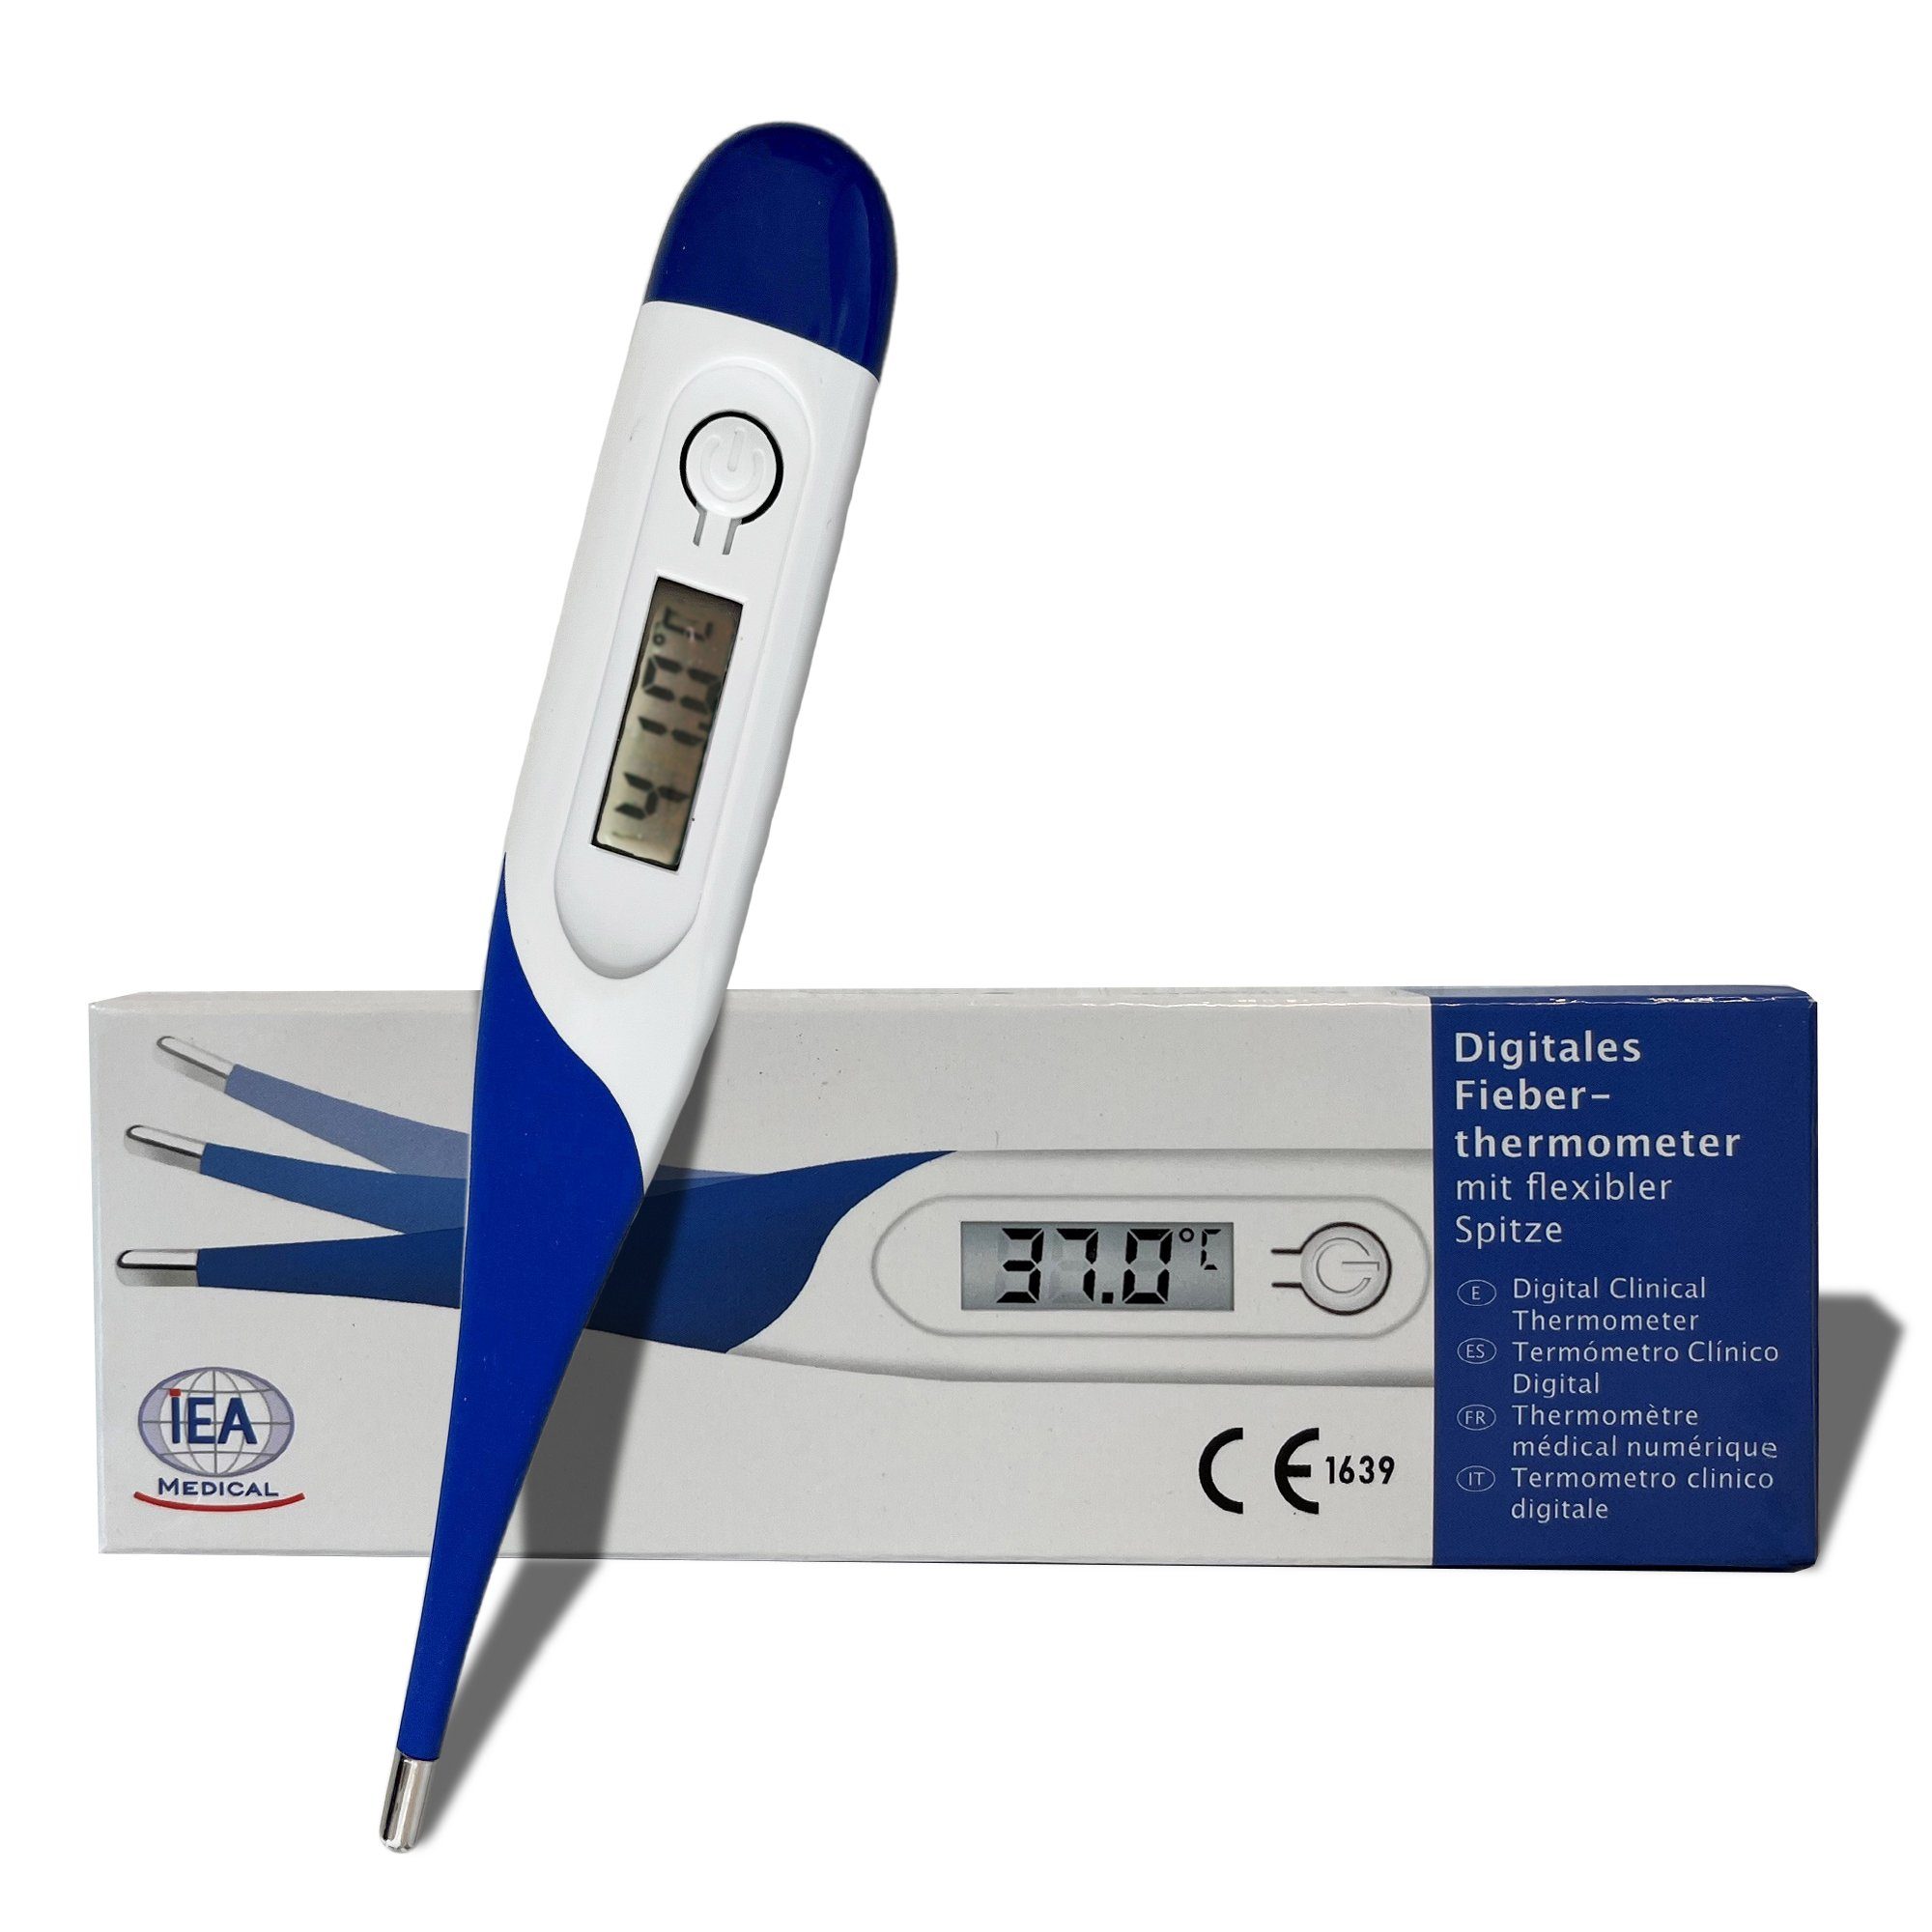 IEA Medical Fieberthermometer Digitales mit Fieberthermometer, Körperthermometer, 1 Erwachsene, Fieberalarm Spitze, Komplettset, Messbereich & Babys, Kinder Set, Für ºC, flexible 